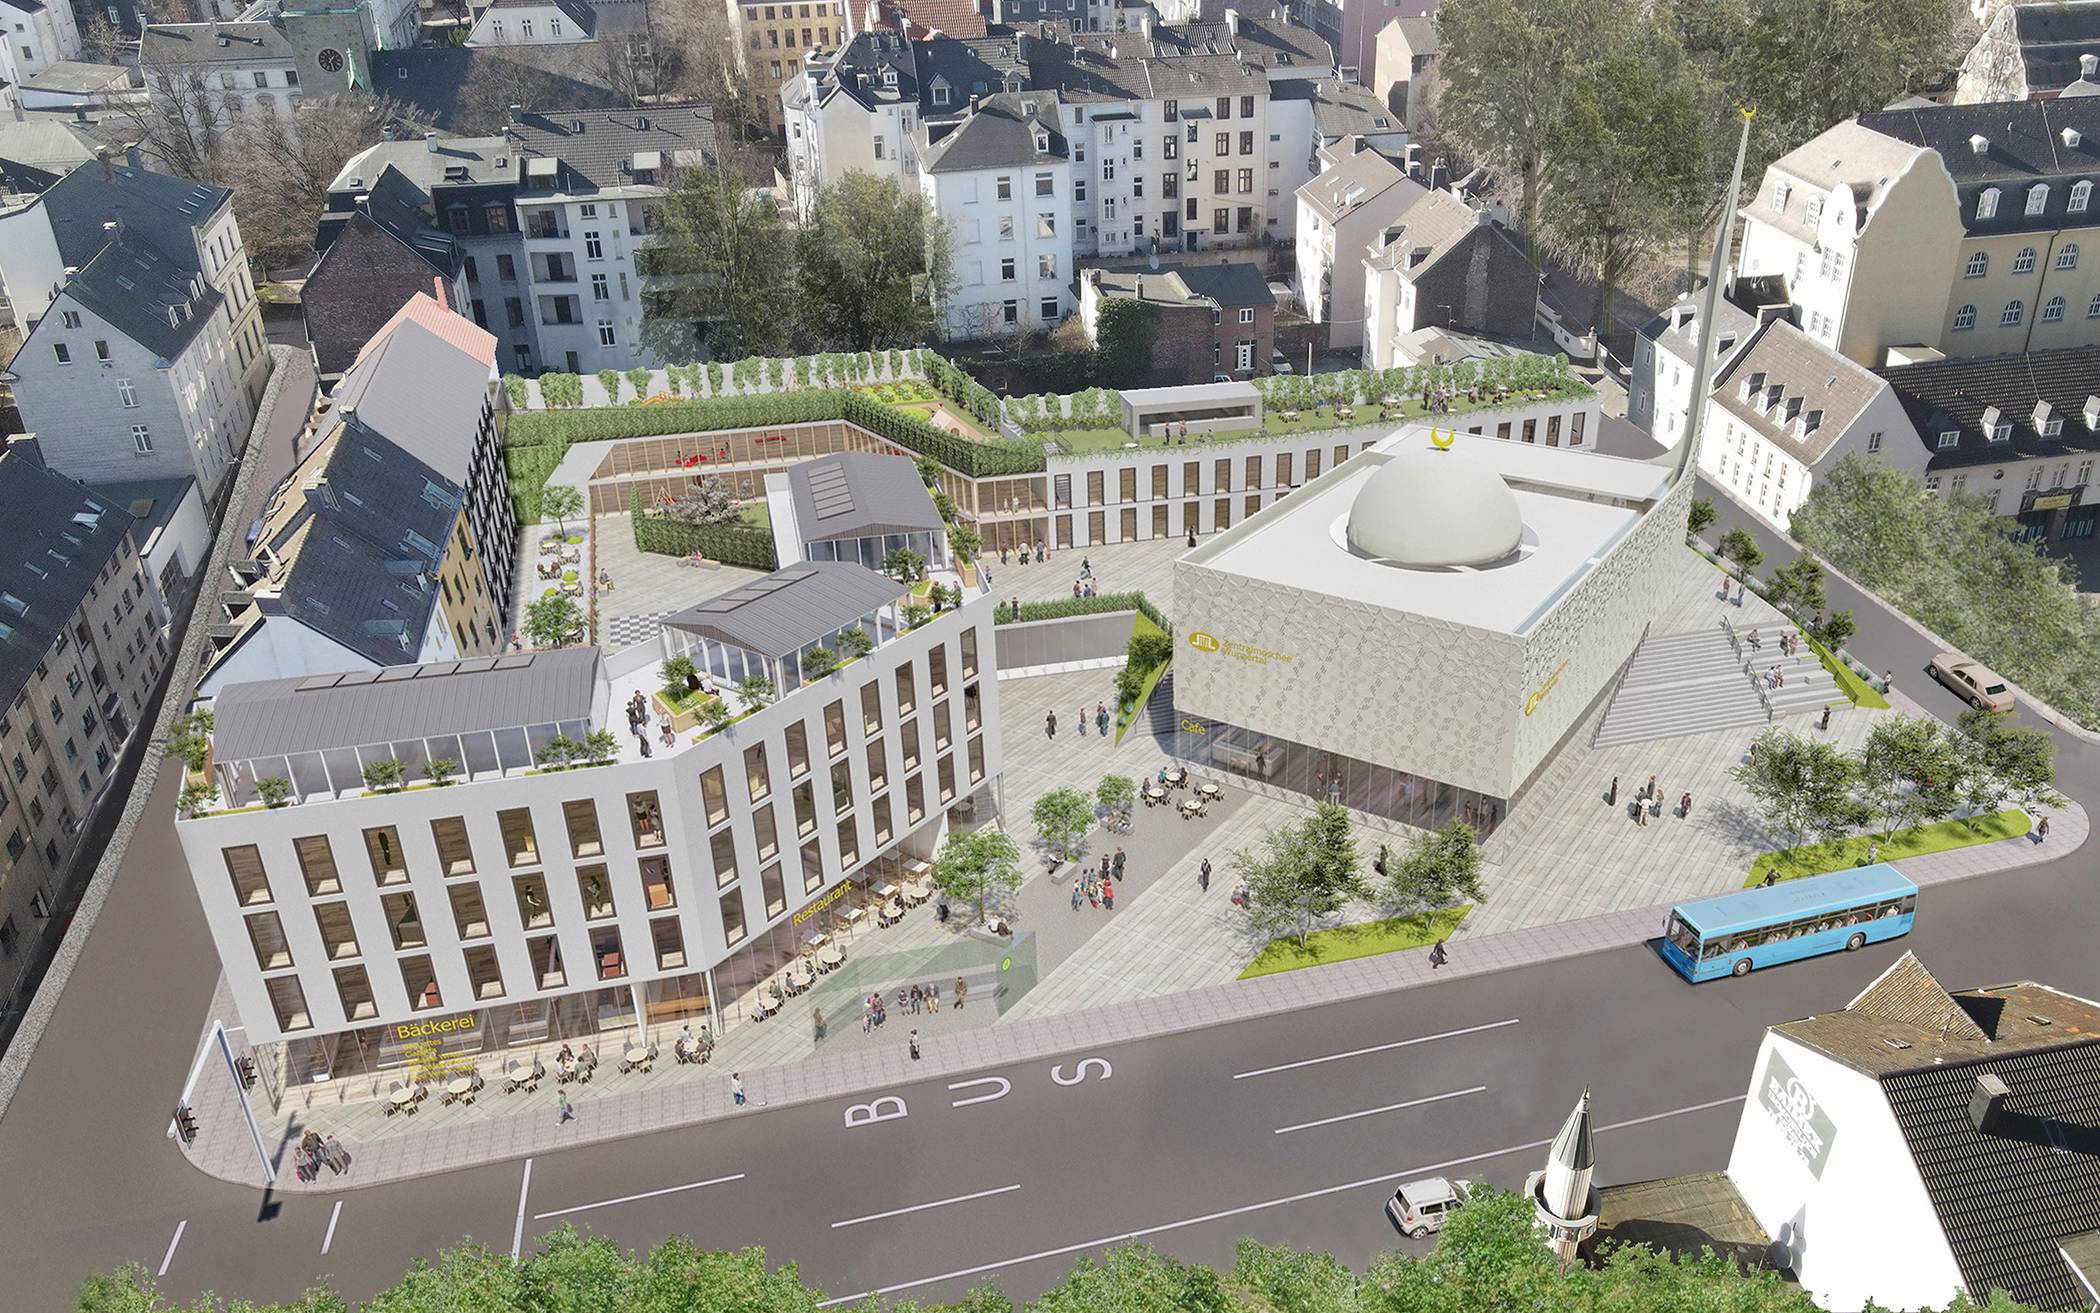  Visualisierung des an der Gathe geplanten Moschee-Areals der Ditb-Gemeinde Wuppertal. 